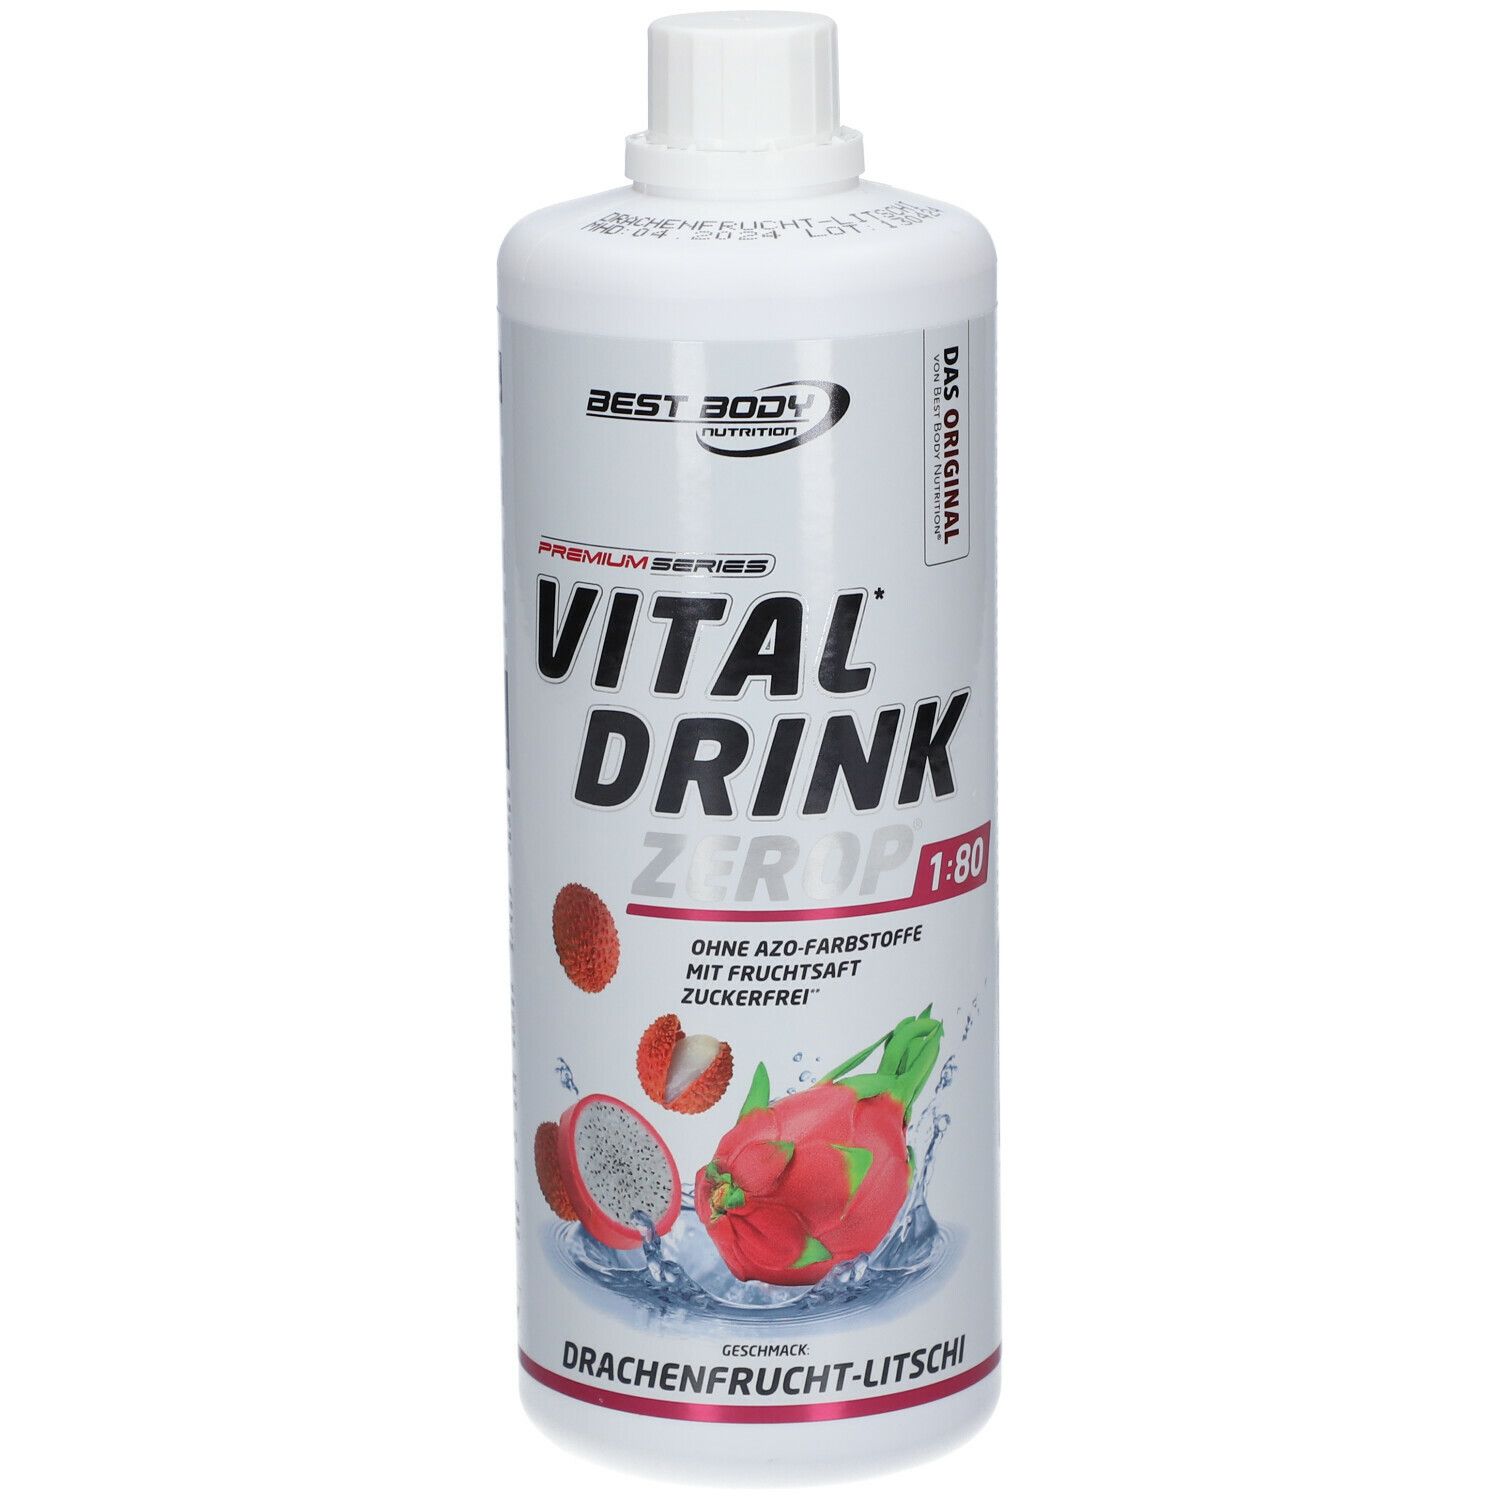 BEST BODY NUTRITION VITAL DRINK ZEROP® DRACHENFRUCHT-LITSCHI